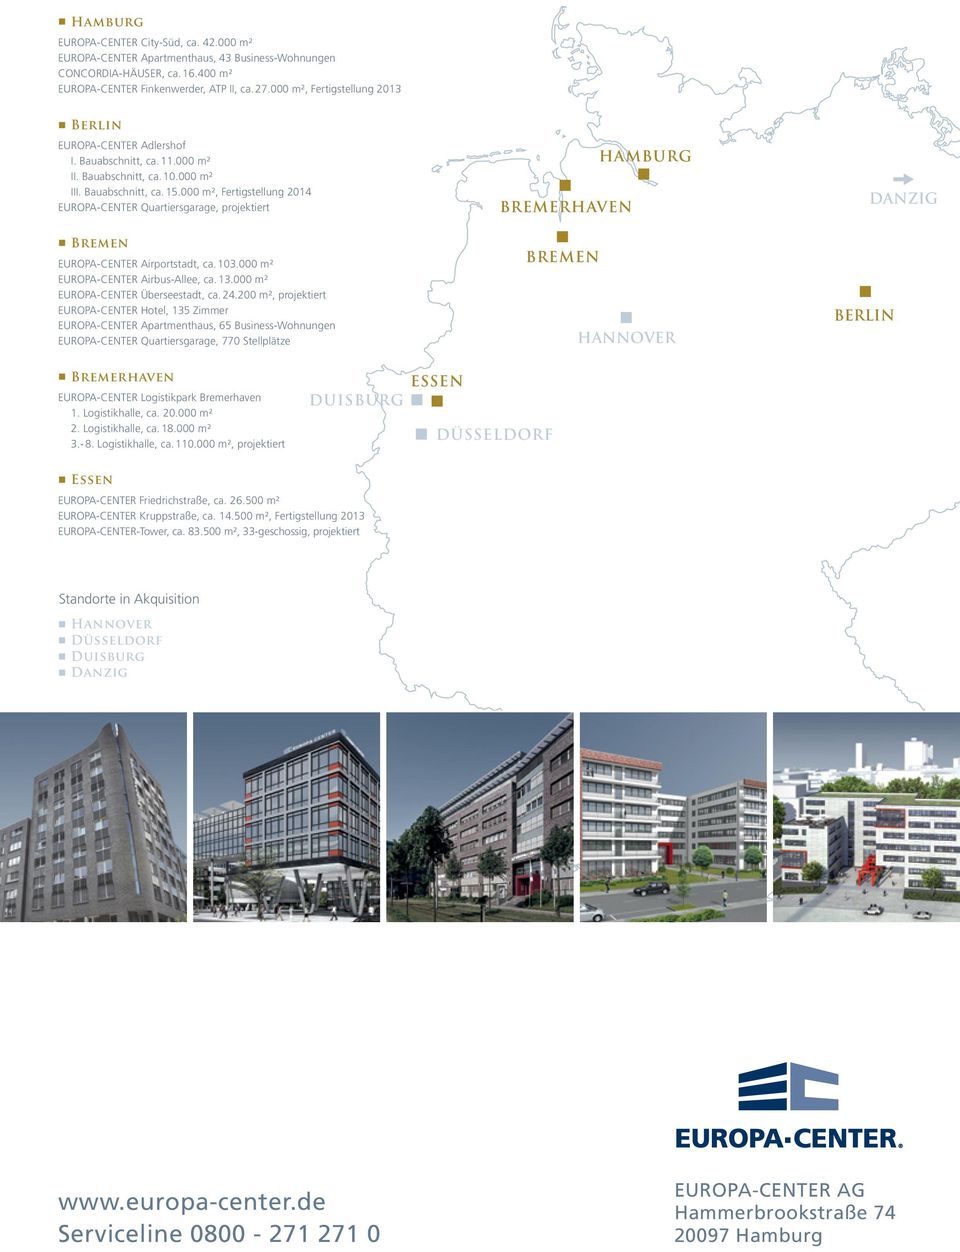 000 m², Fertigstellug 2014 EUROPA-CENTER Quartiersgarage, projektiert Breme EUROPA-CENTER Airportstadt, ca. 103.000 m² EUROPA-CENTER Airbus-Allee, ca. 13.000 m² EUROPA-CENTER Überseestadt, ca. 24.